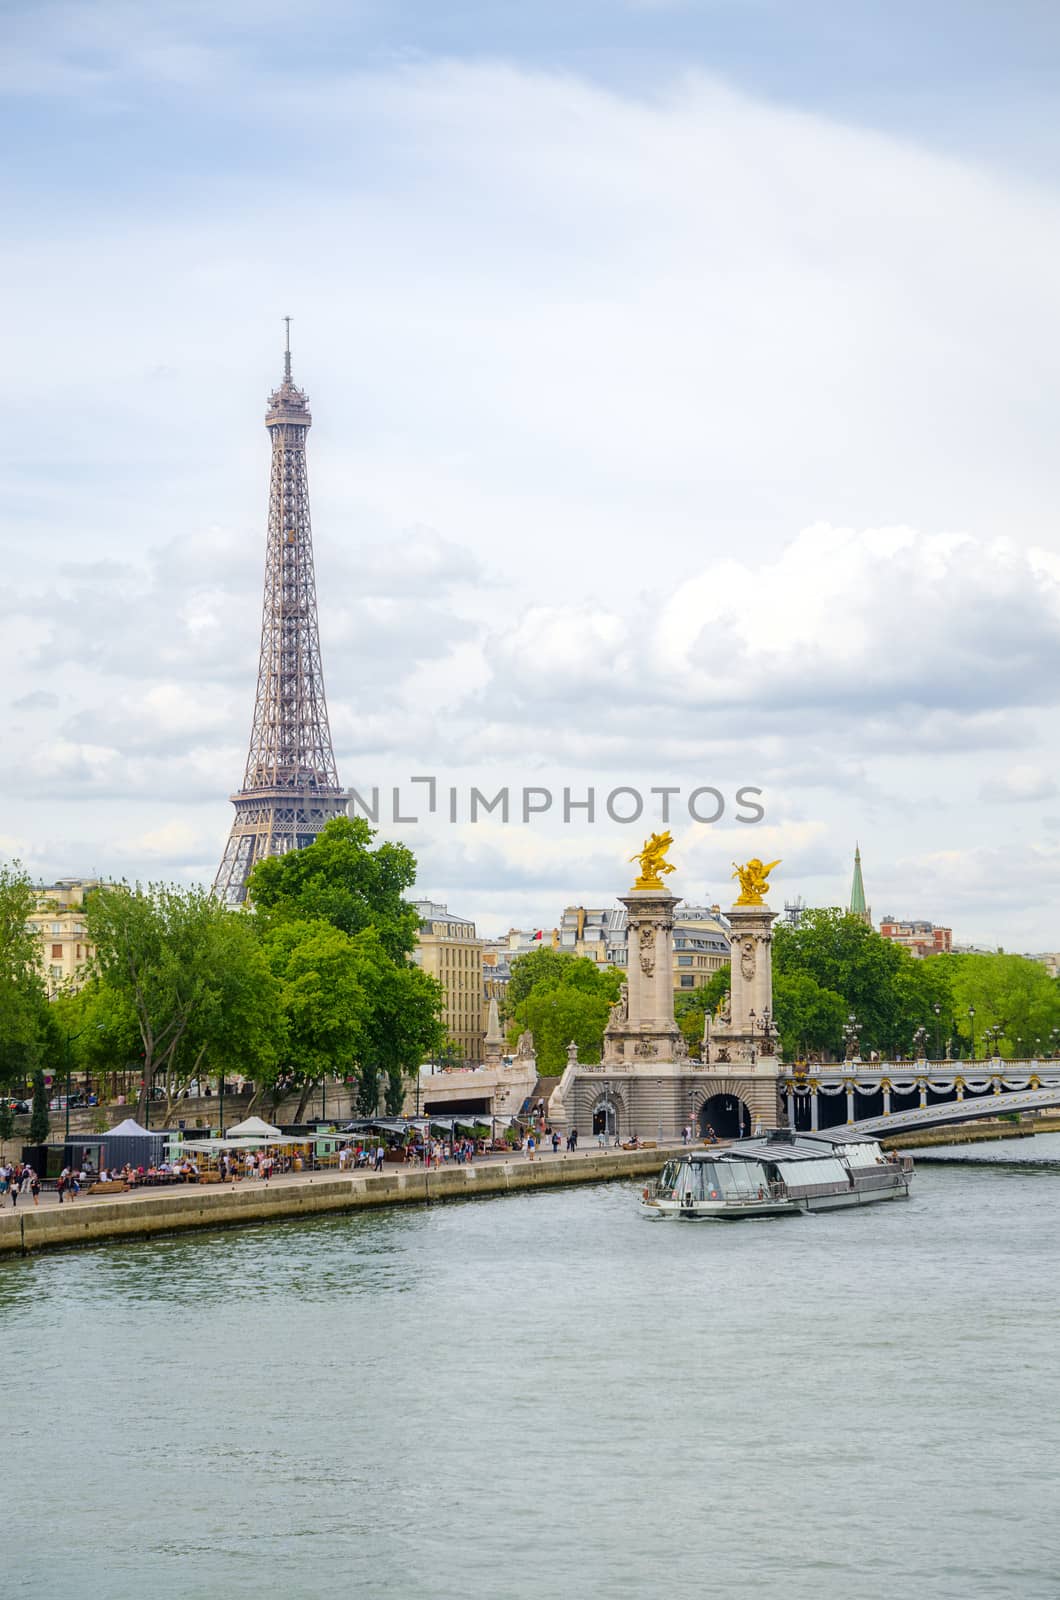 Seine in Paris with Eiffel tower. France.